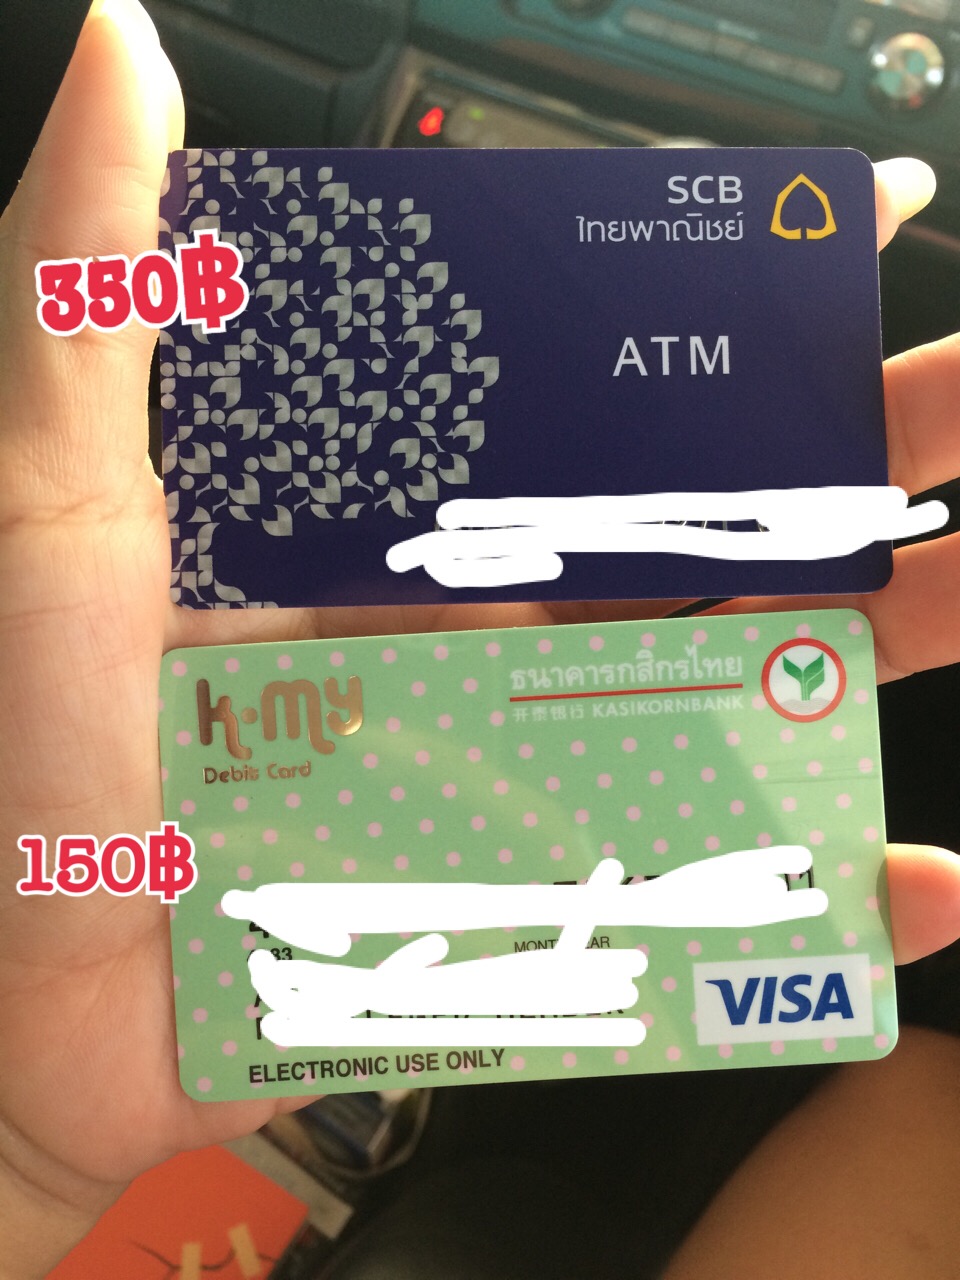 บัตร Atm ไทยพาณิชย์ ทำอะไรได้มากกว่า บัตร Atm ของธนาคารกสิกรไทยคะ??  ทำไมแพงกว่ากัน 200฿ - Pantip